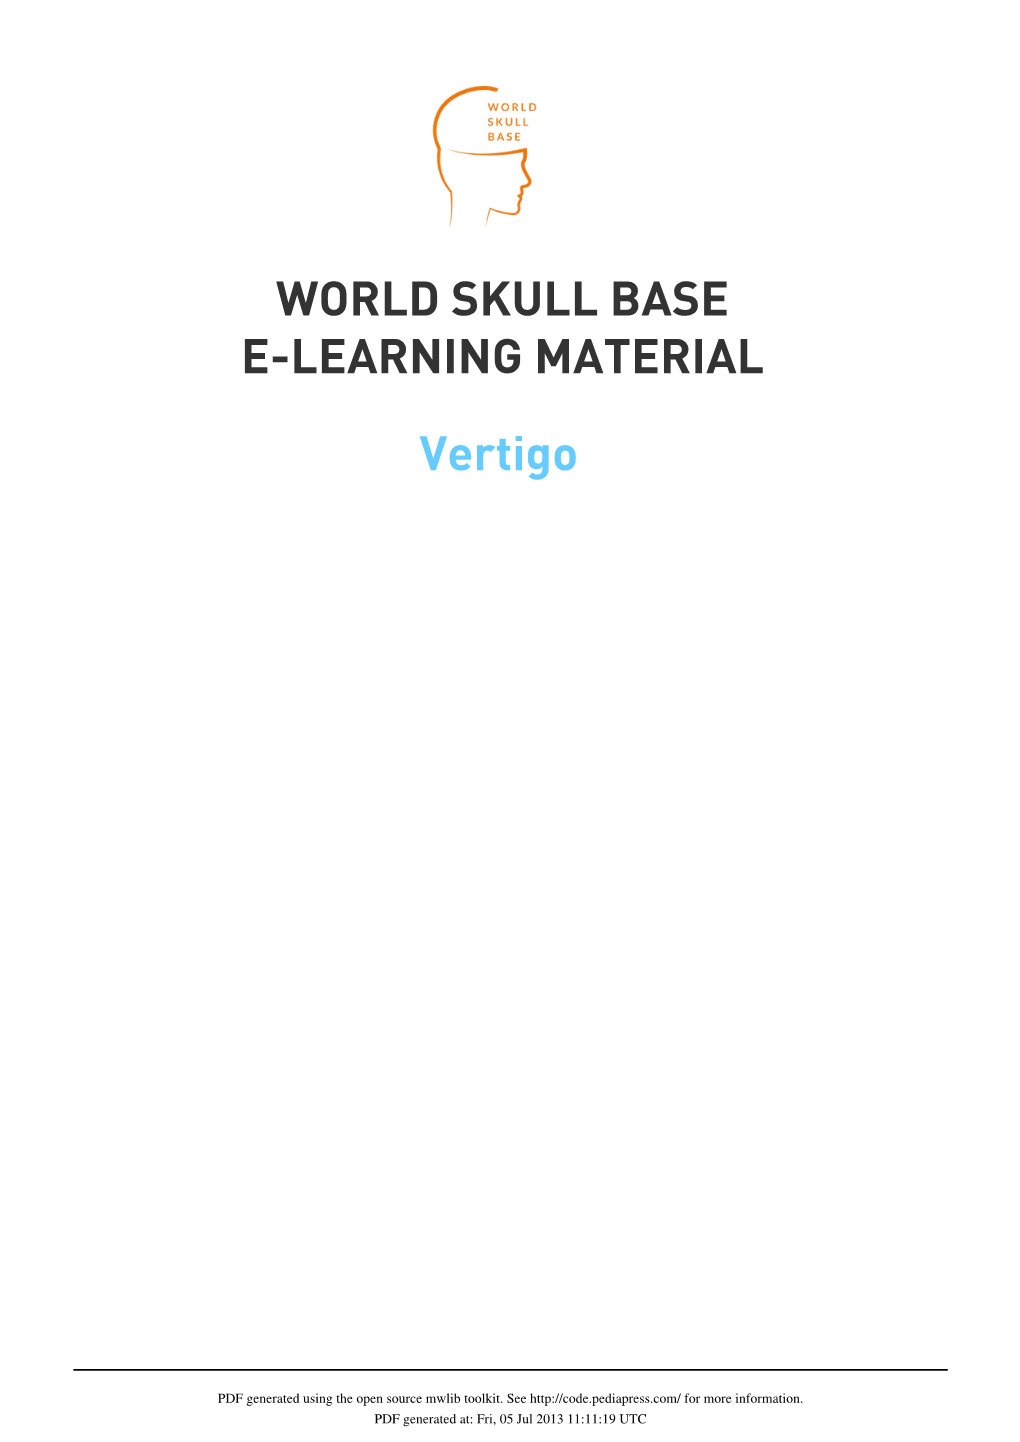 Vertigo WORLD SKULL BASE E-LEARNING MATERIAL